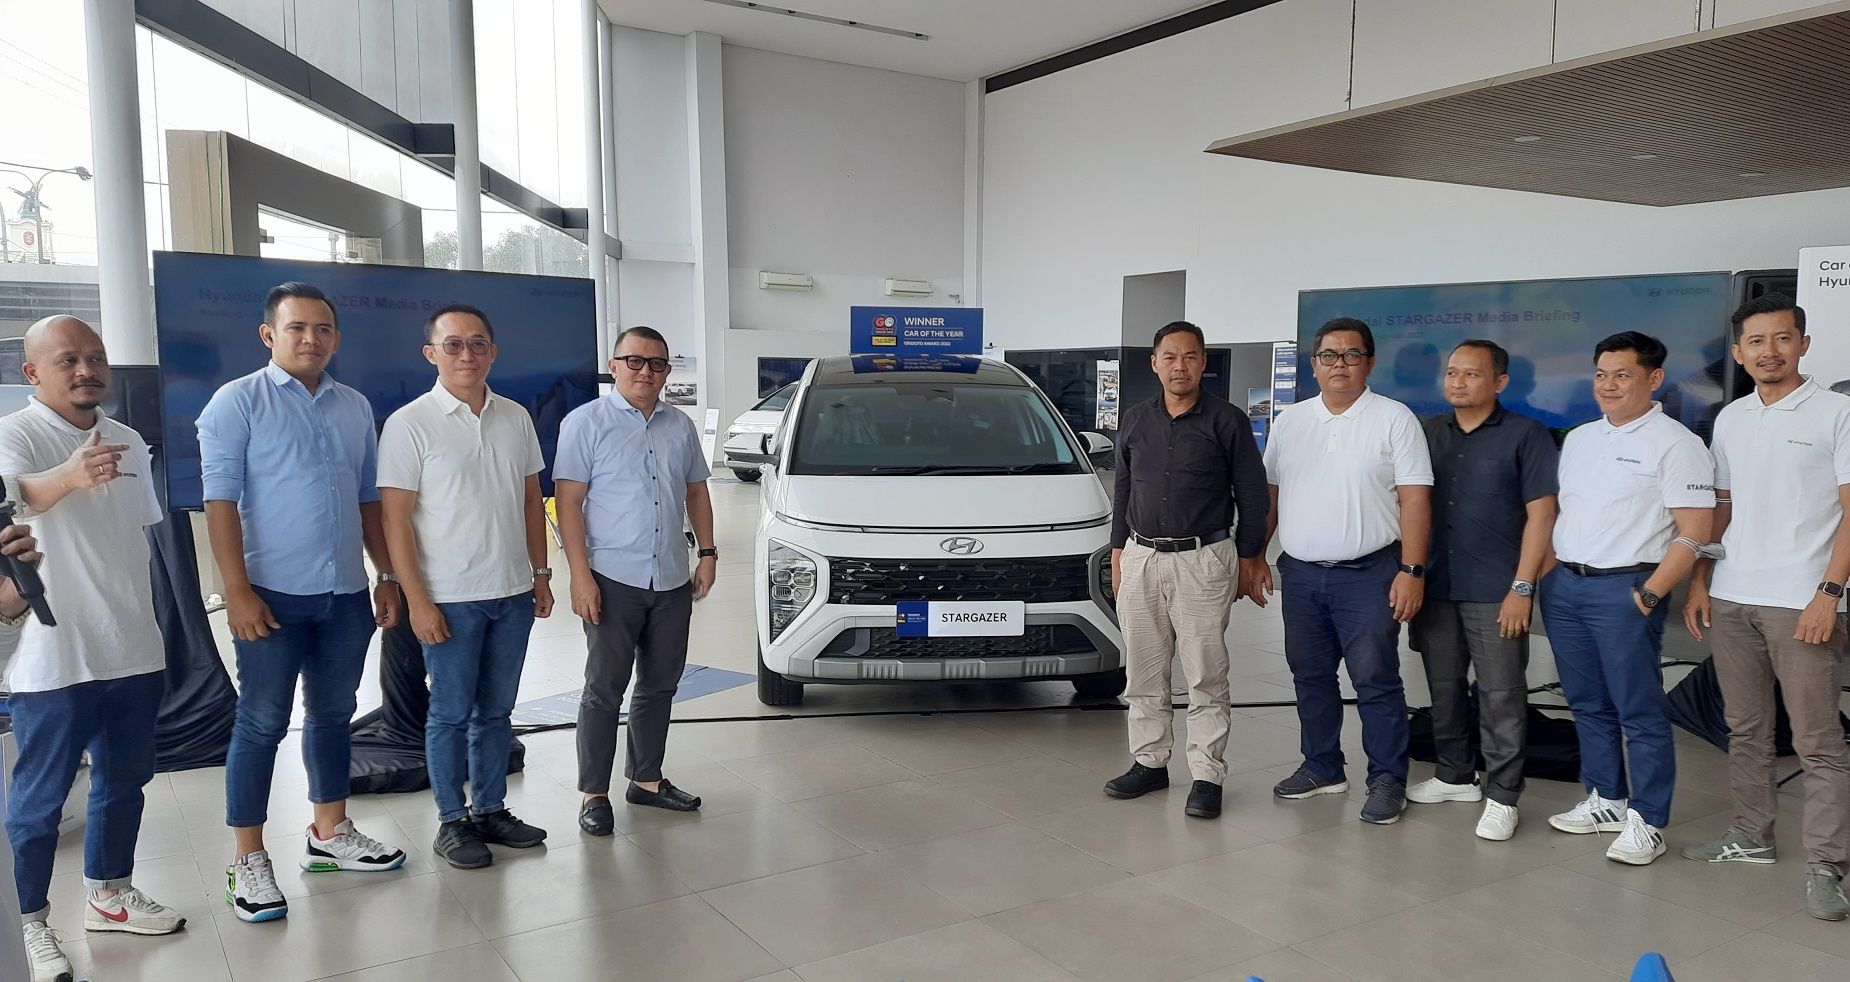 Inovasi layanan Hyundai diperkenalkan kepada awak media yang berlangsung di diler Hyundai Rancaekek, Kabupaten Bandung, Rabu 1 Februari 2023.   